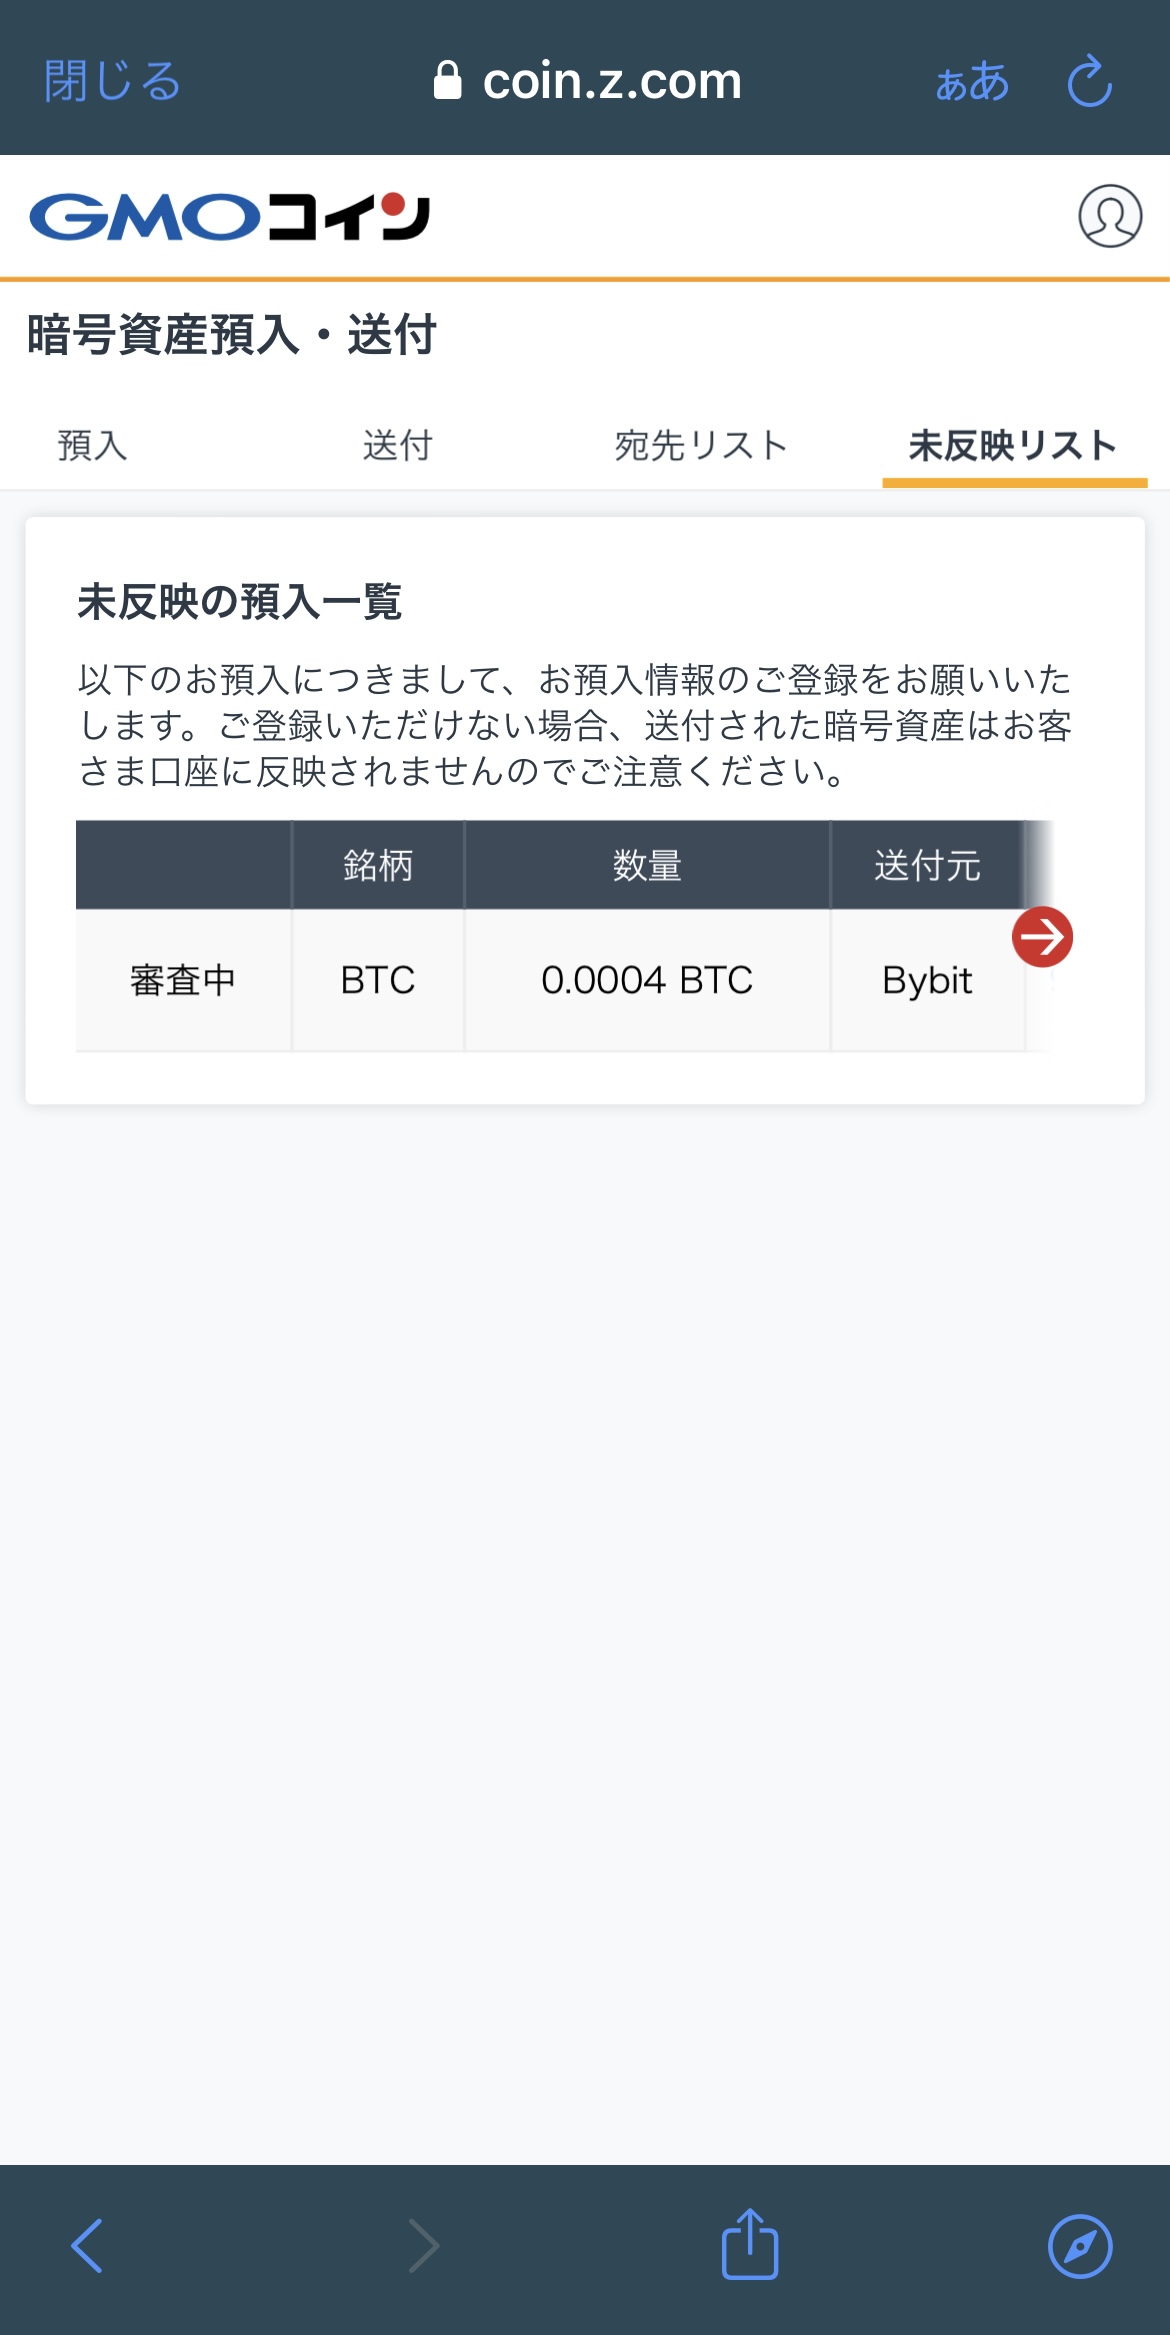 BybitからGMOコインへBTCを送金